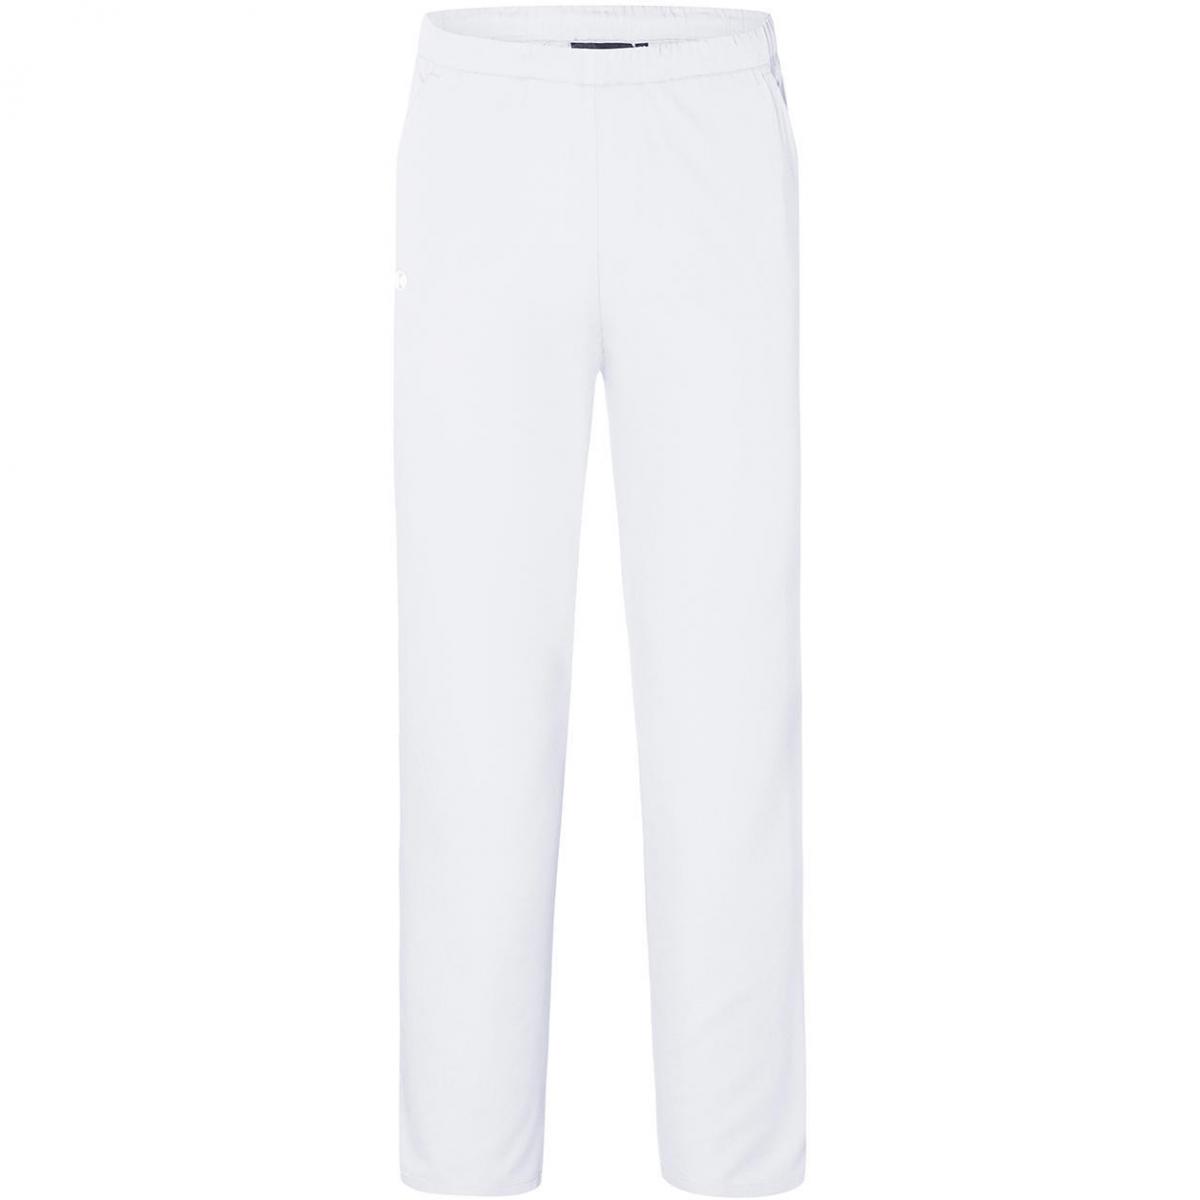 Hersteller: Karlowsky Herstellernummer: HM 14 Artikelbezeichnung: Slip-on Trousers Essential - Schlupfhose unisex Farbe: White